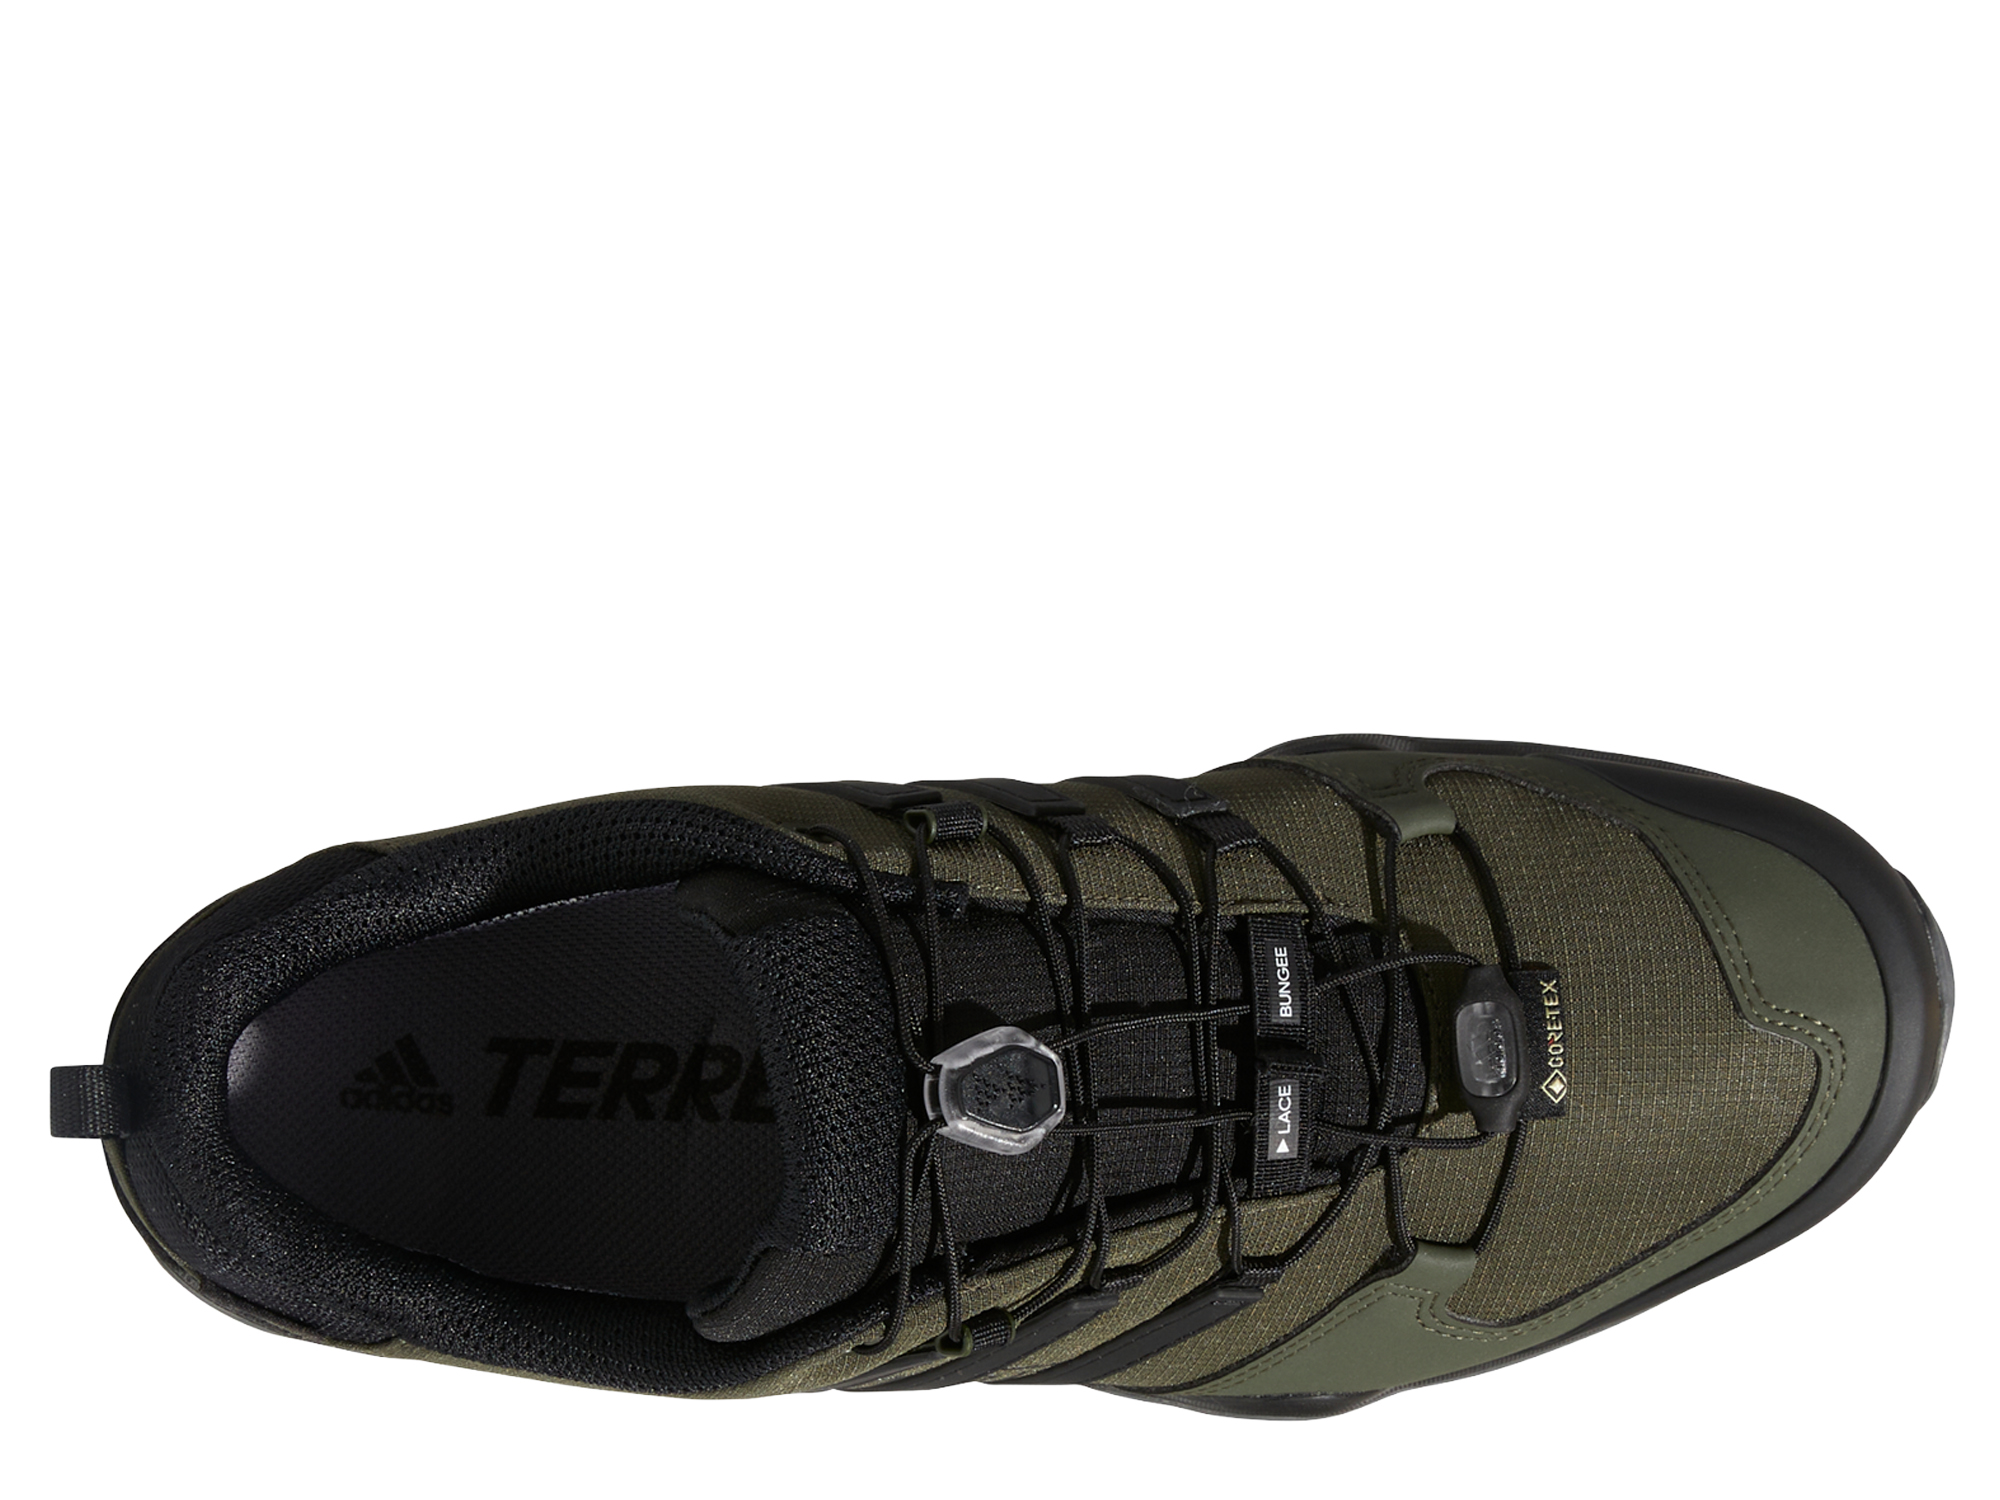 Adidas Terrex Swift R2 GTX Herren Trailrunning Schuh